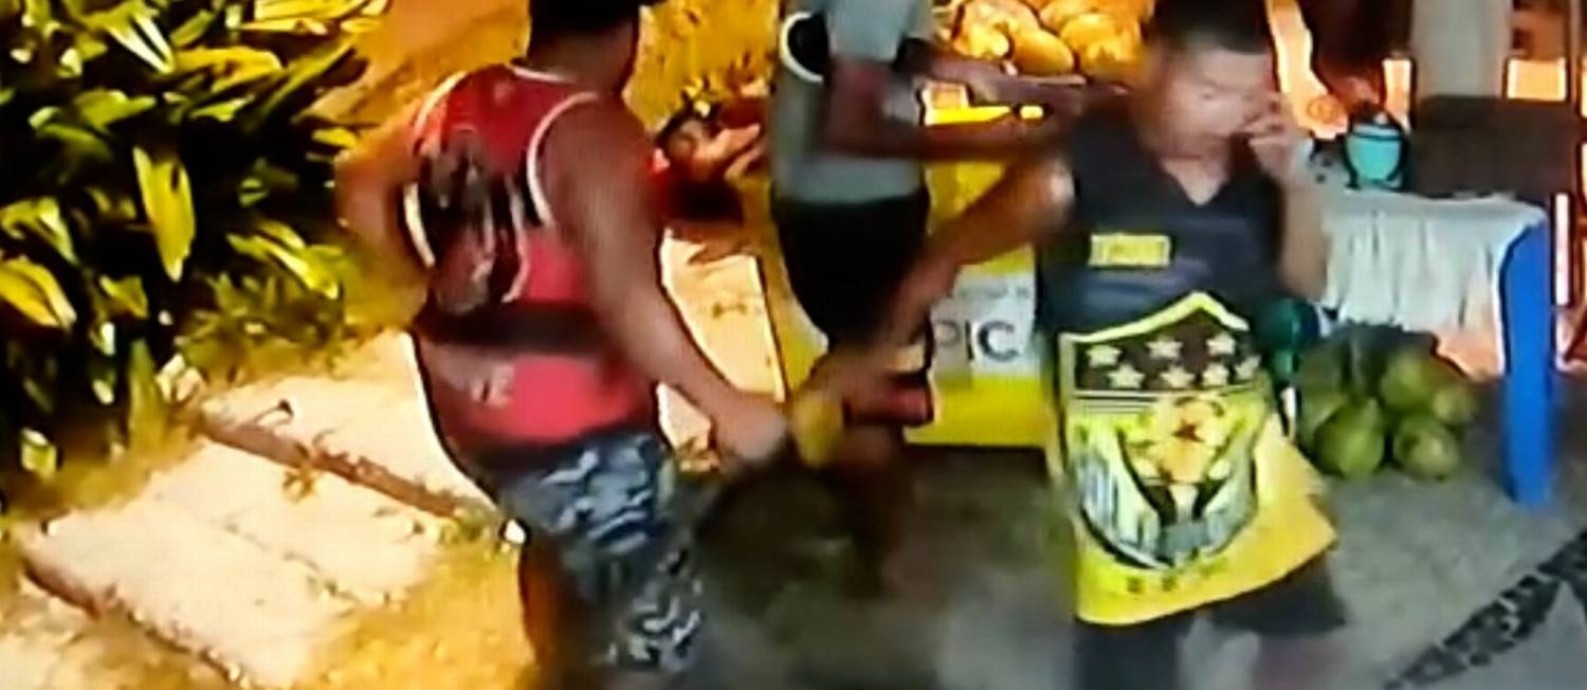 Fábio Pirineus da Silva, o Belo, flagrado no vídeo batendo em Moïse Mugenyi Kabagambe com um porrete, no momento em que enviou uma mensagem de áudio perguntando sobre as câmeras Foto: Reprodução